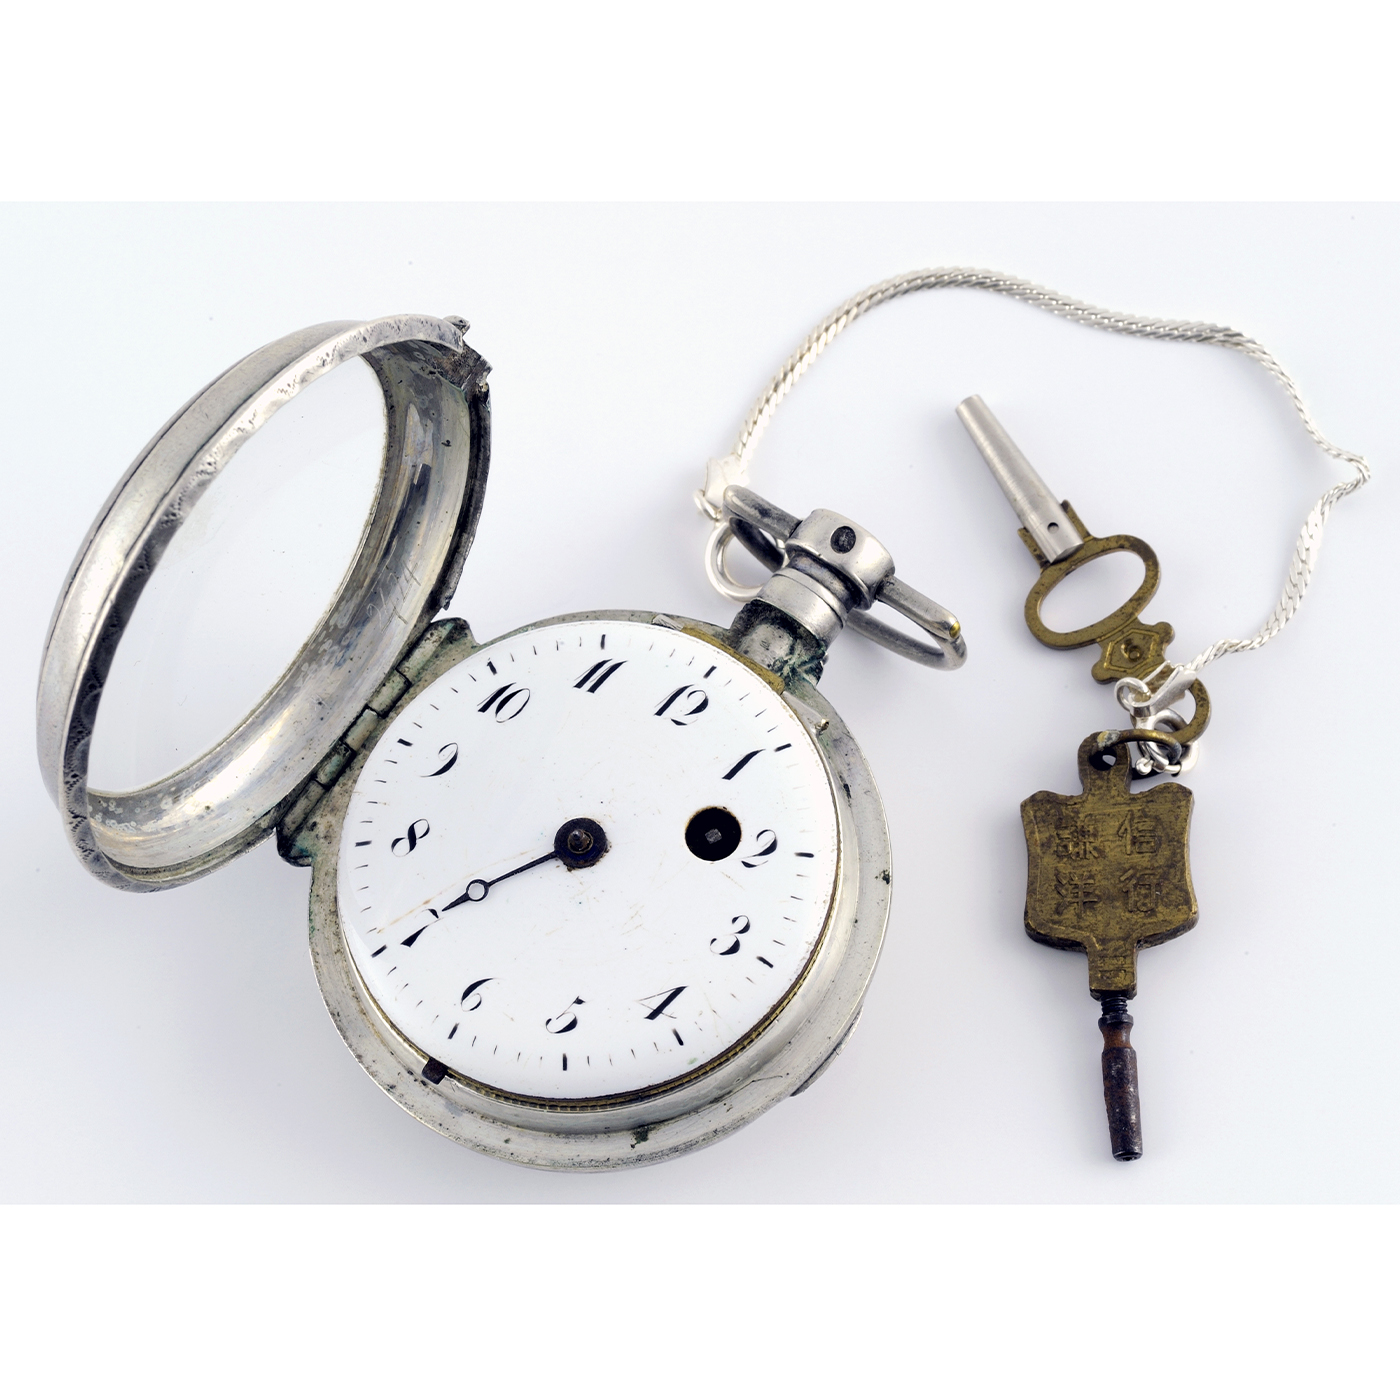 Reloj de Bolsillo Francés, Verge Fuseé, para caballero. Ca. 1820.